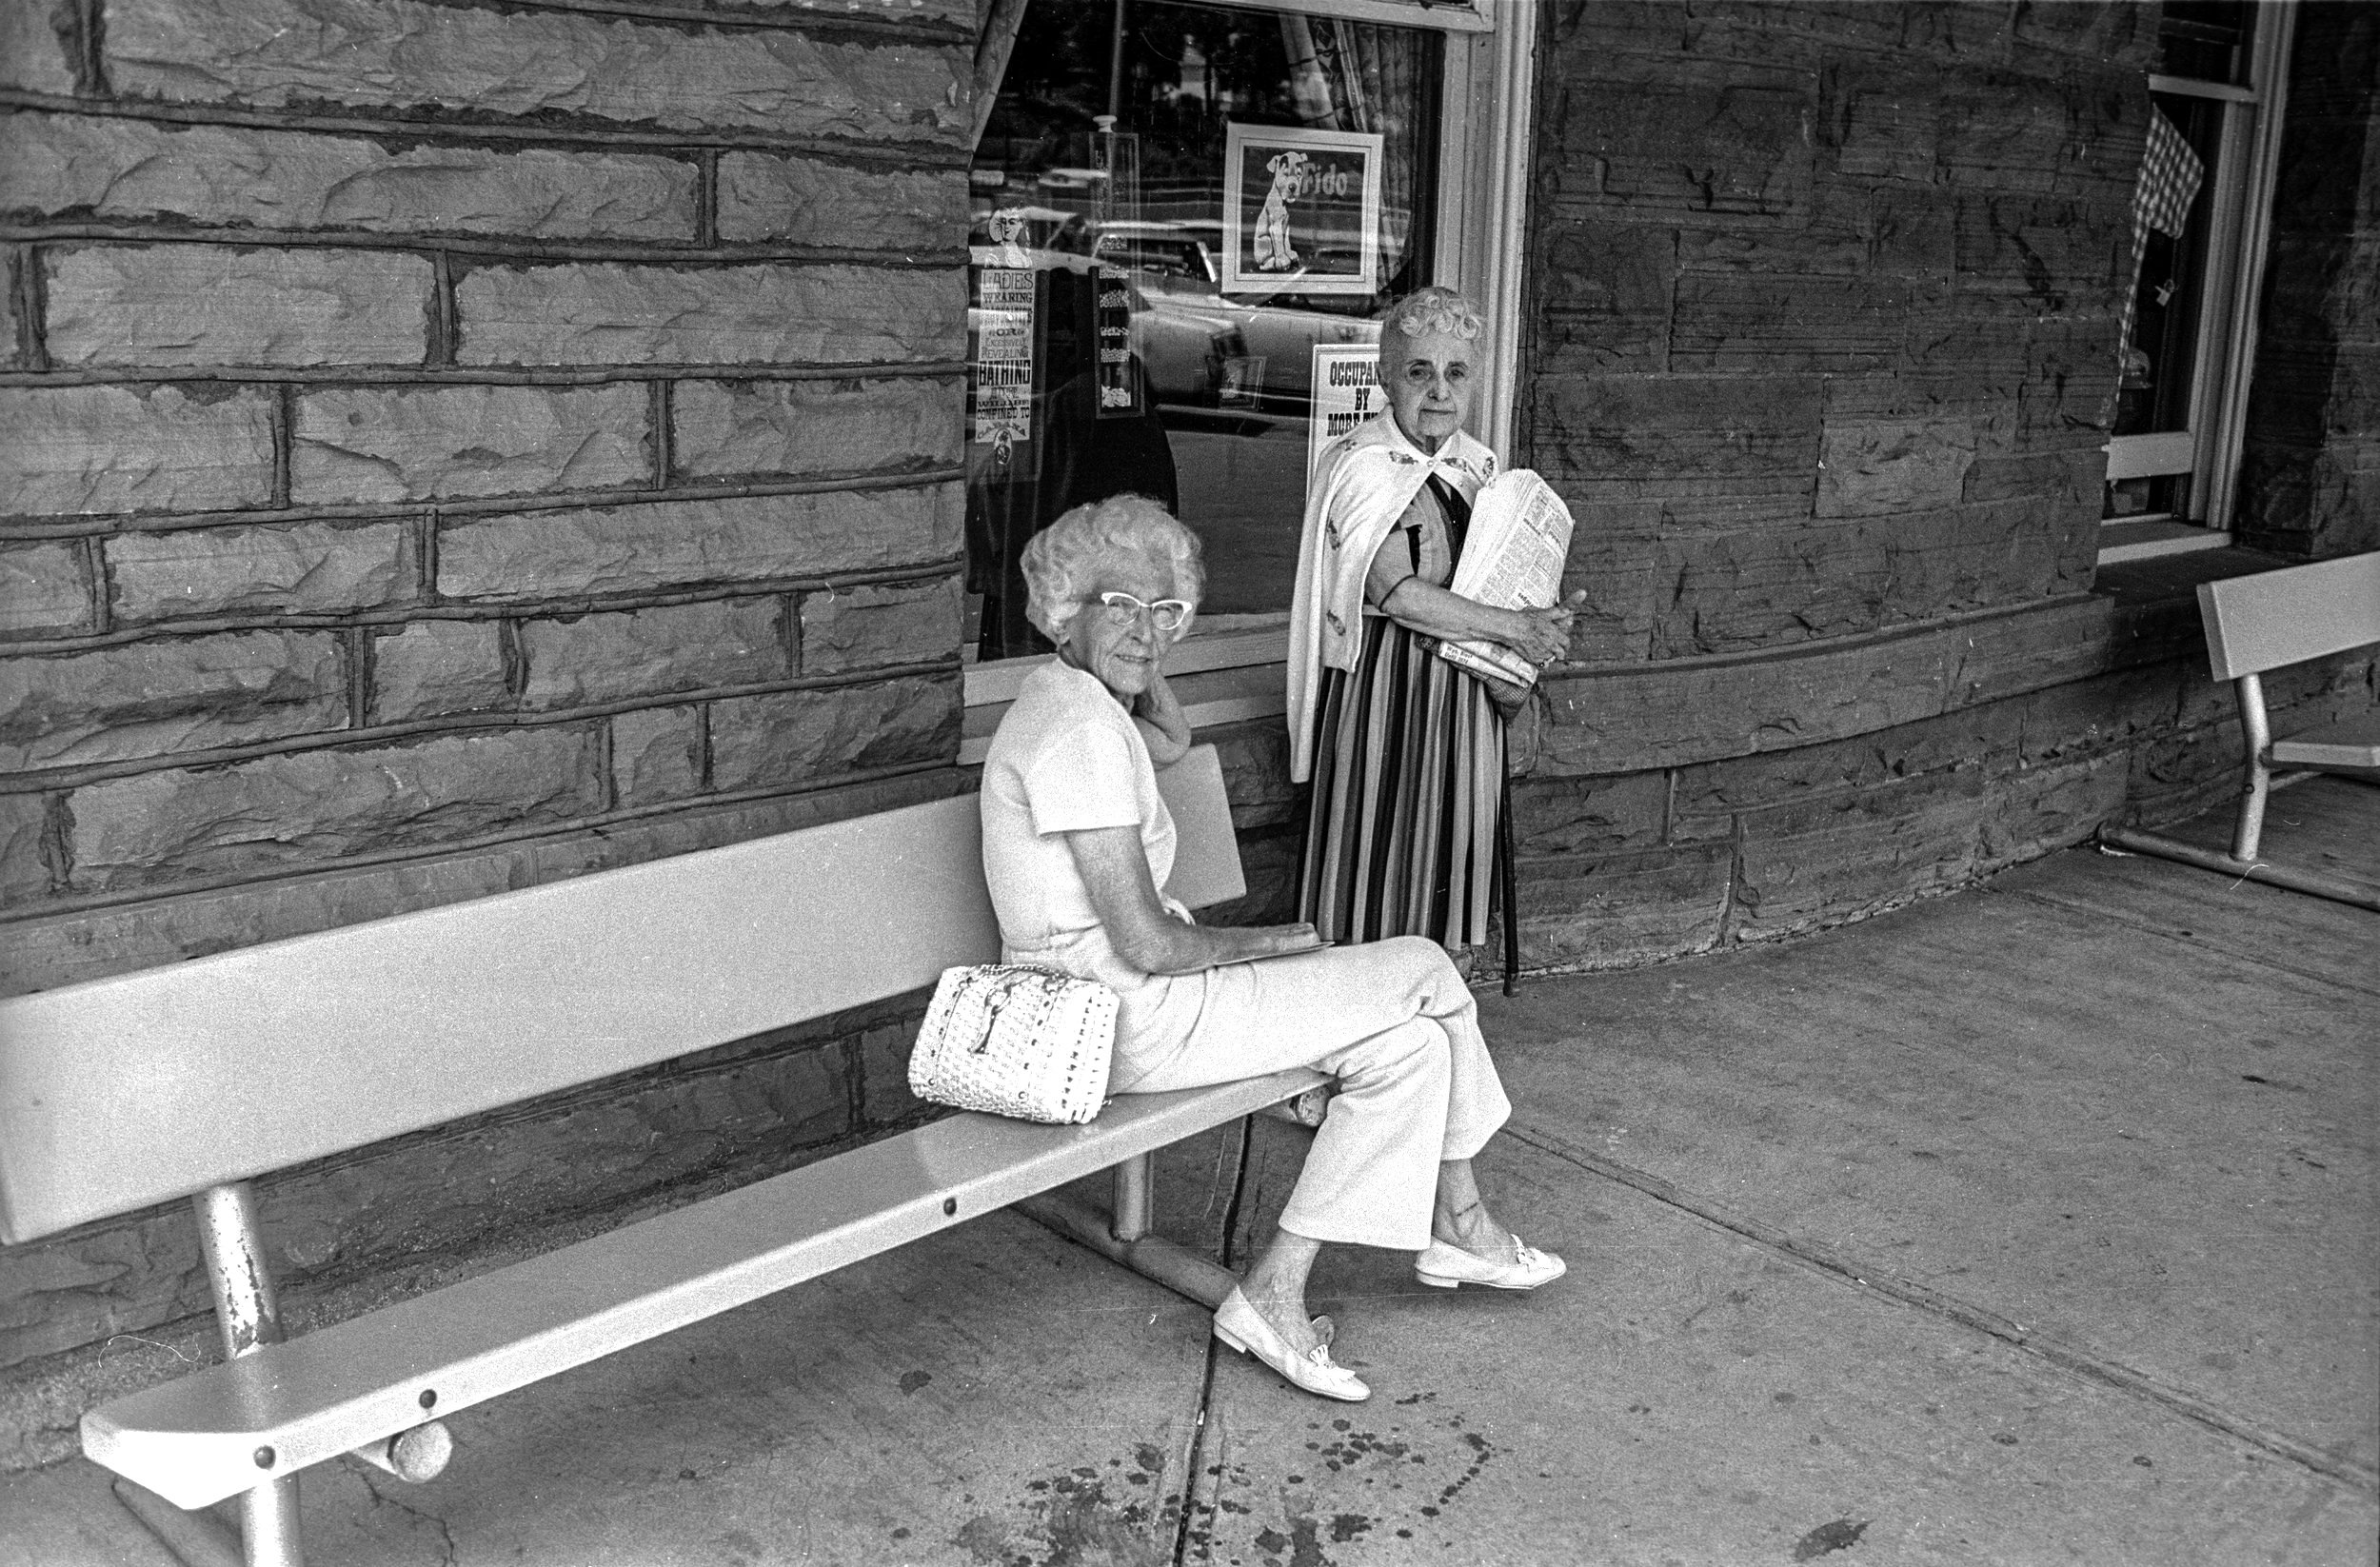   Glenwood Springs, CO, 1972  